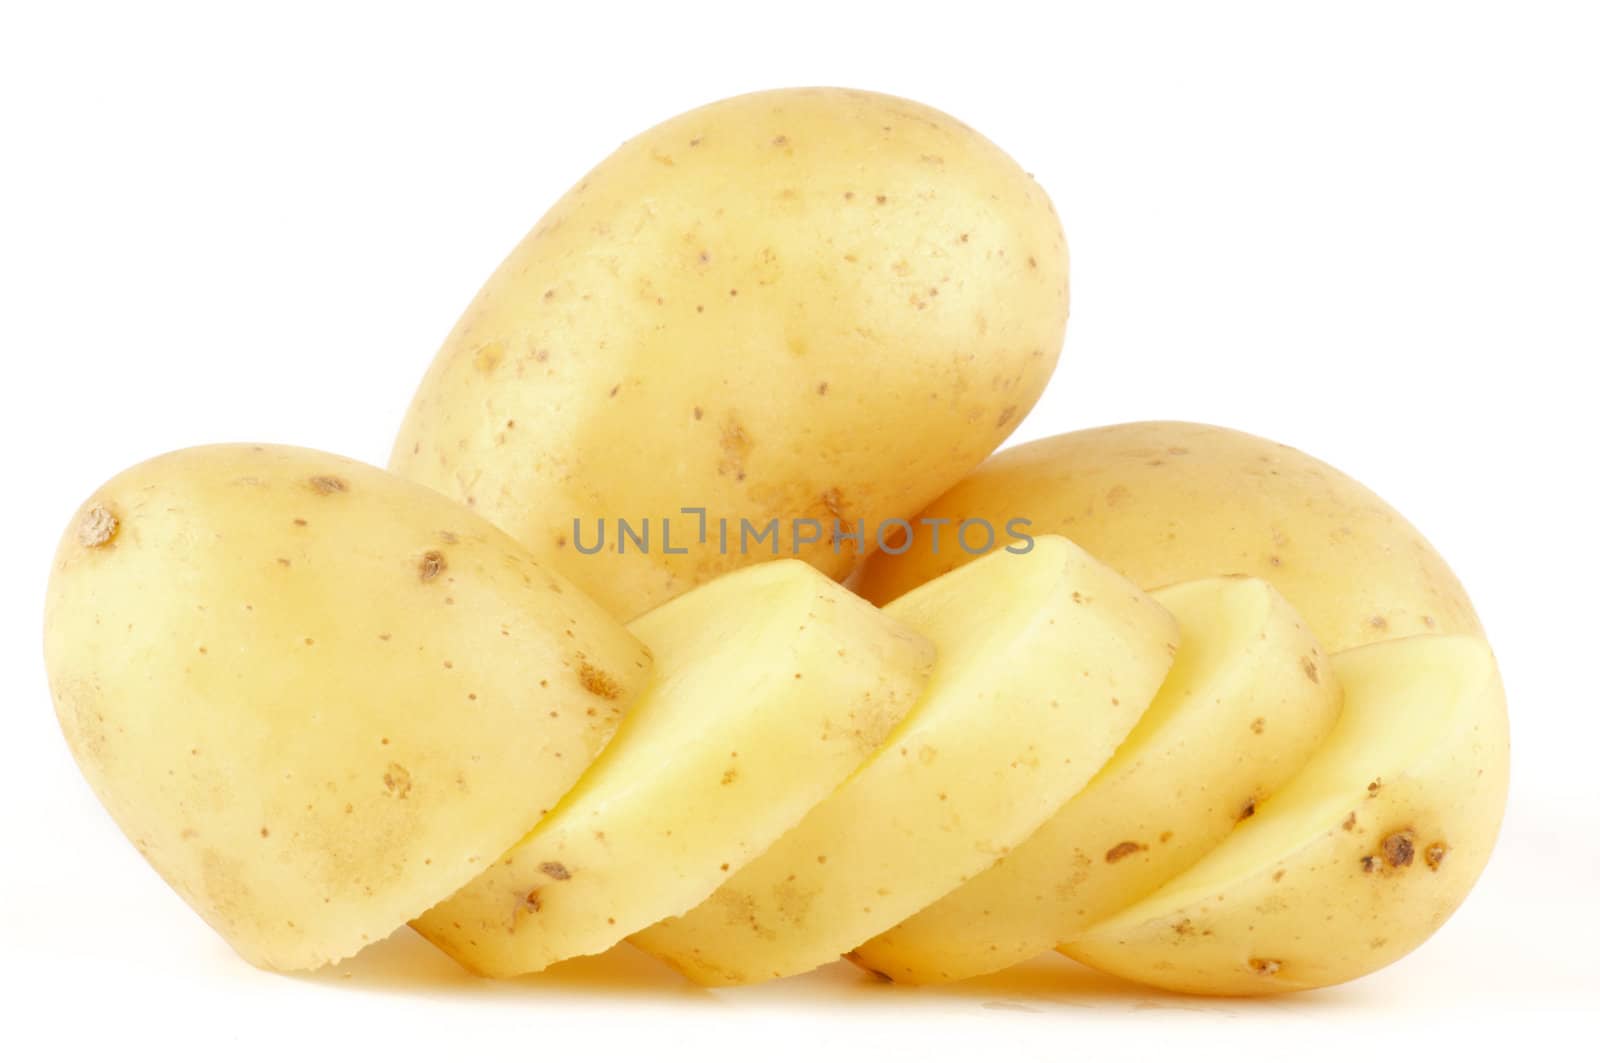 Raw Potato Full body and Freshly slided Isolated on white background